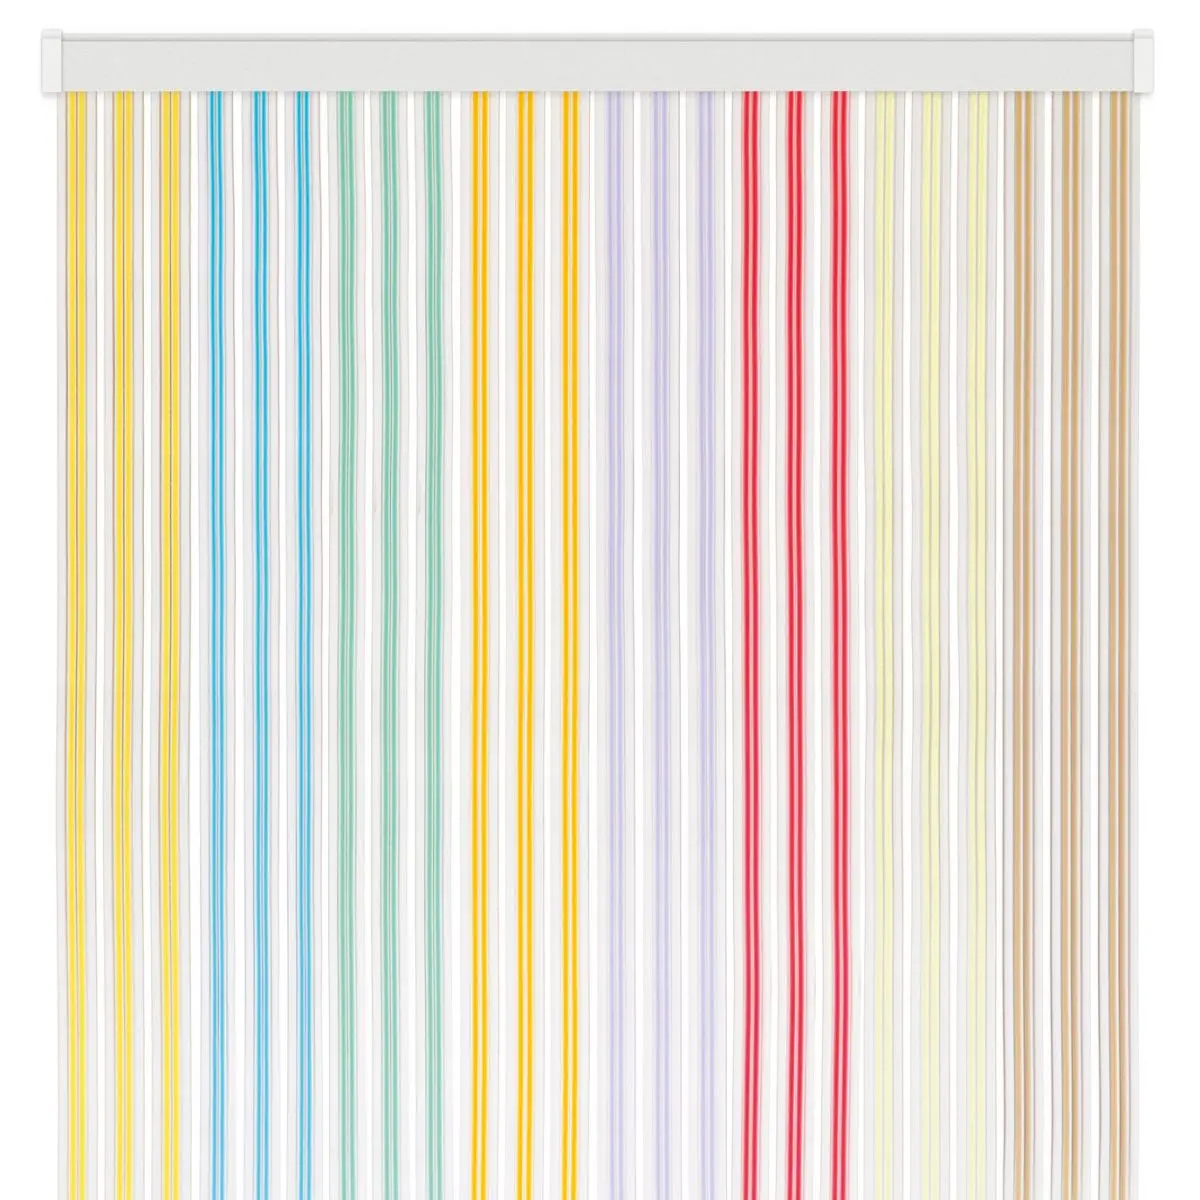 Band Lux ajtófüggöny - 100 x 220 cm, színes